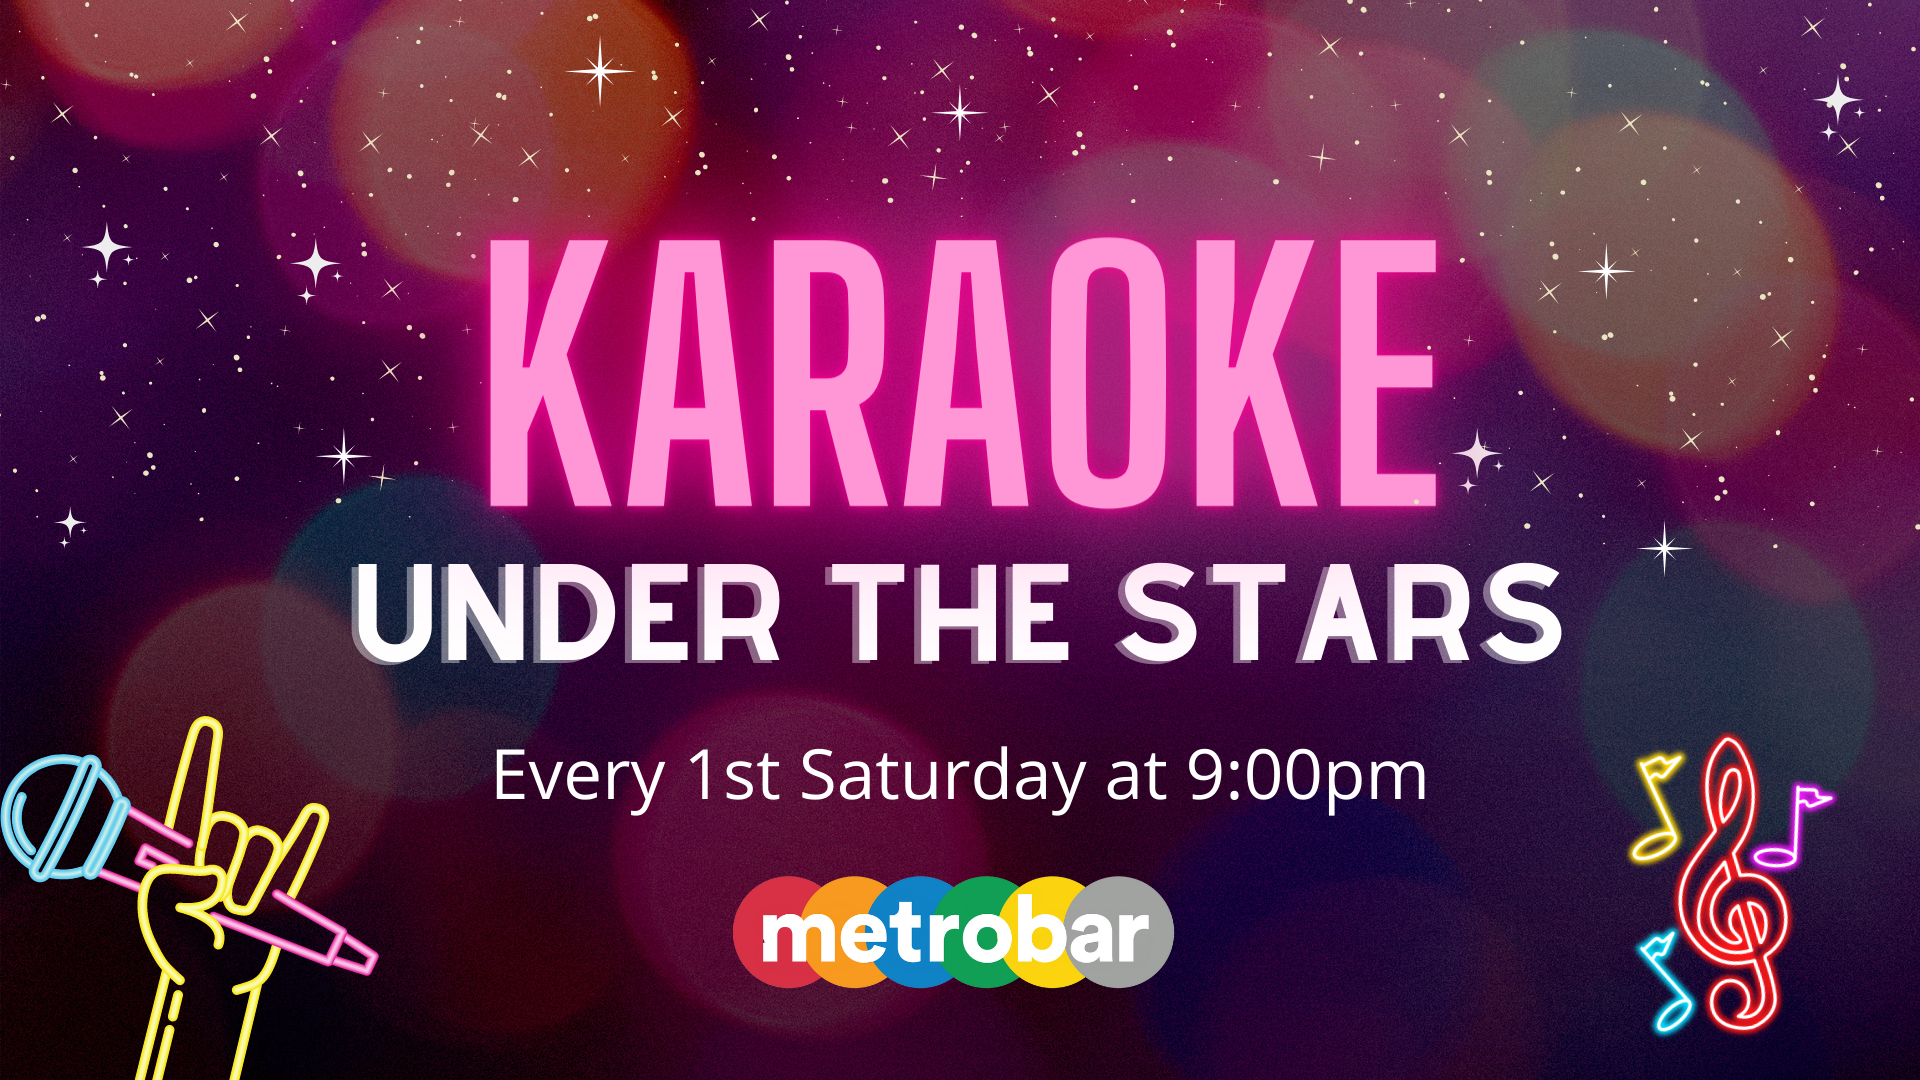 Karaoke Under the Stars at metrobar